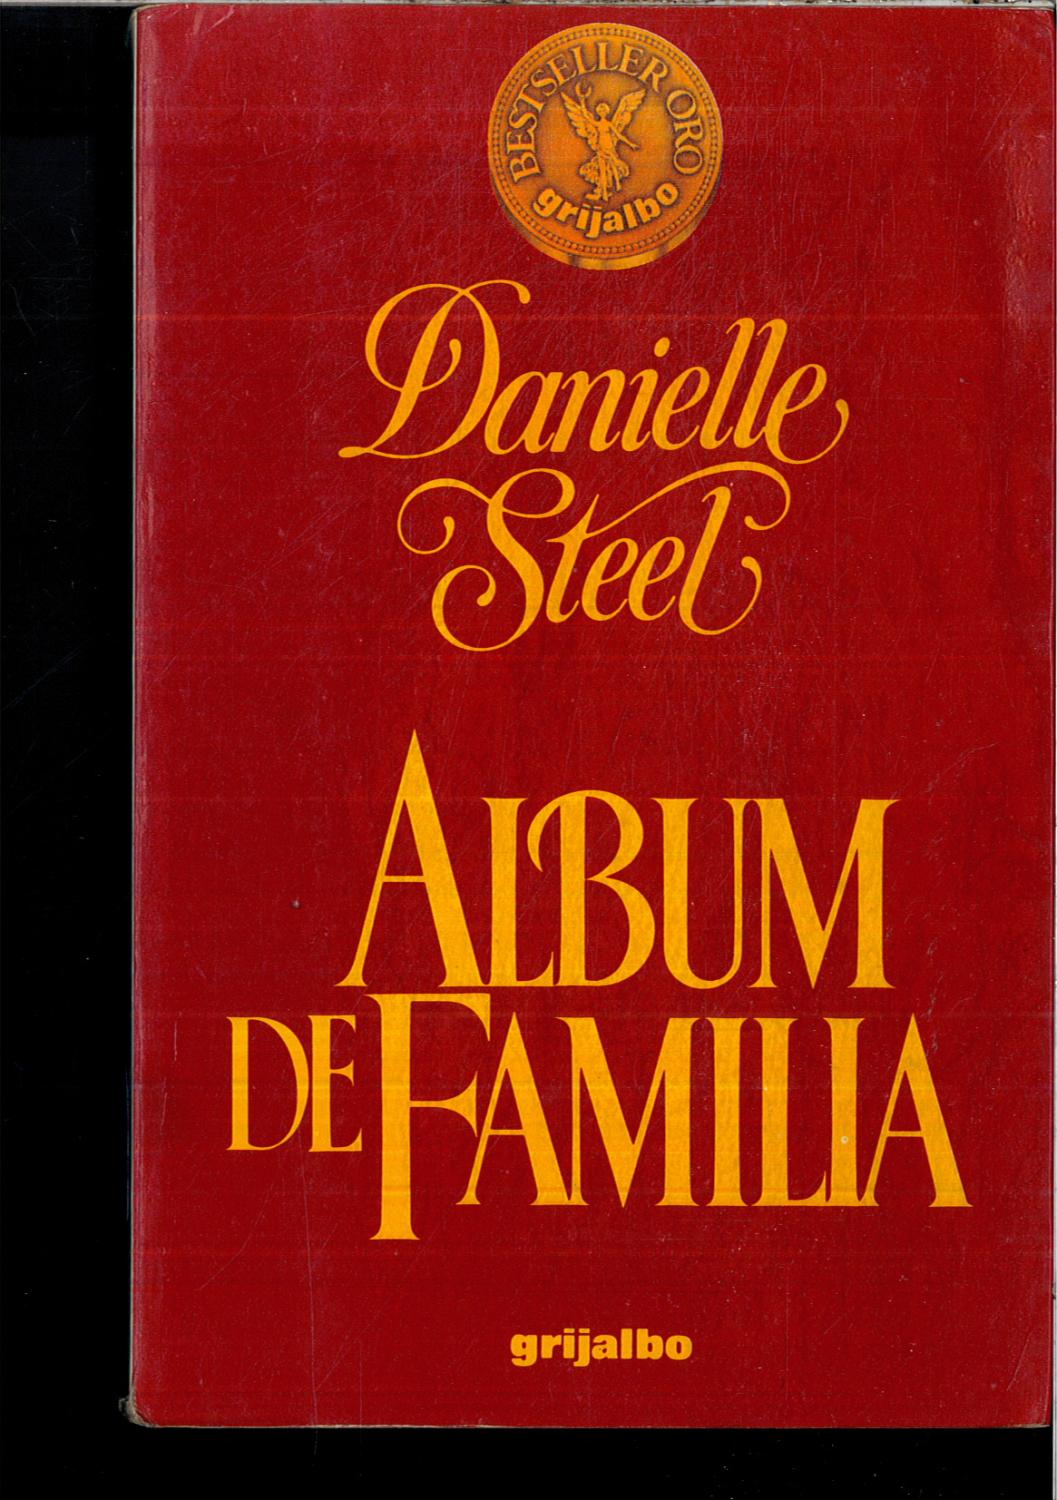 ALBUM DE FAMILIA - DANIELLE STEEL